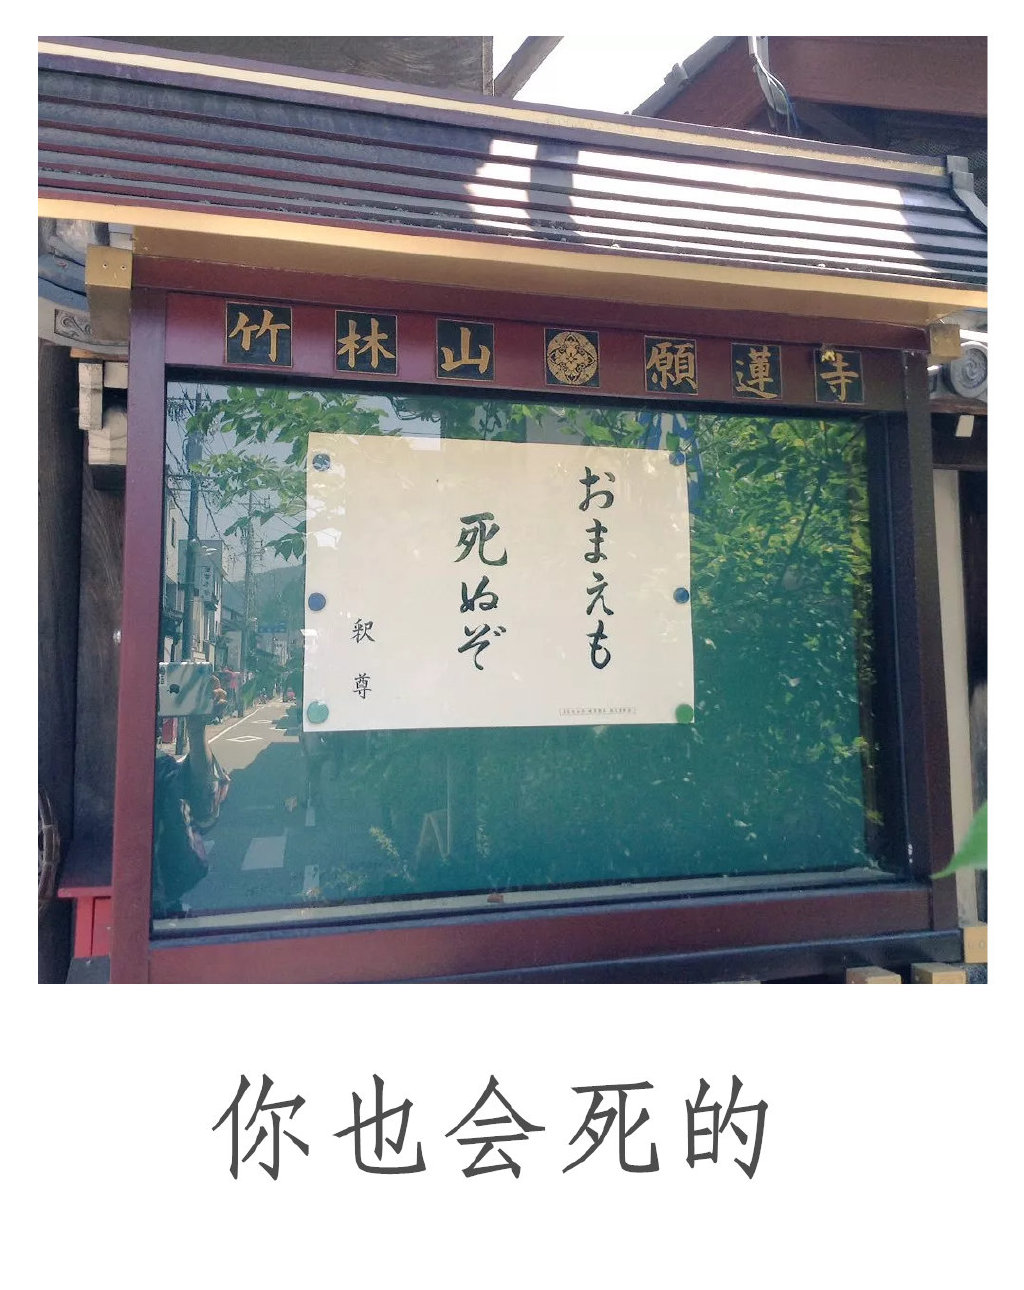 真·佛系！！！日本寺庙布告栏，除了日常通知，还会张贴由方丈抄写的一两句标语，一般都很扎心